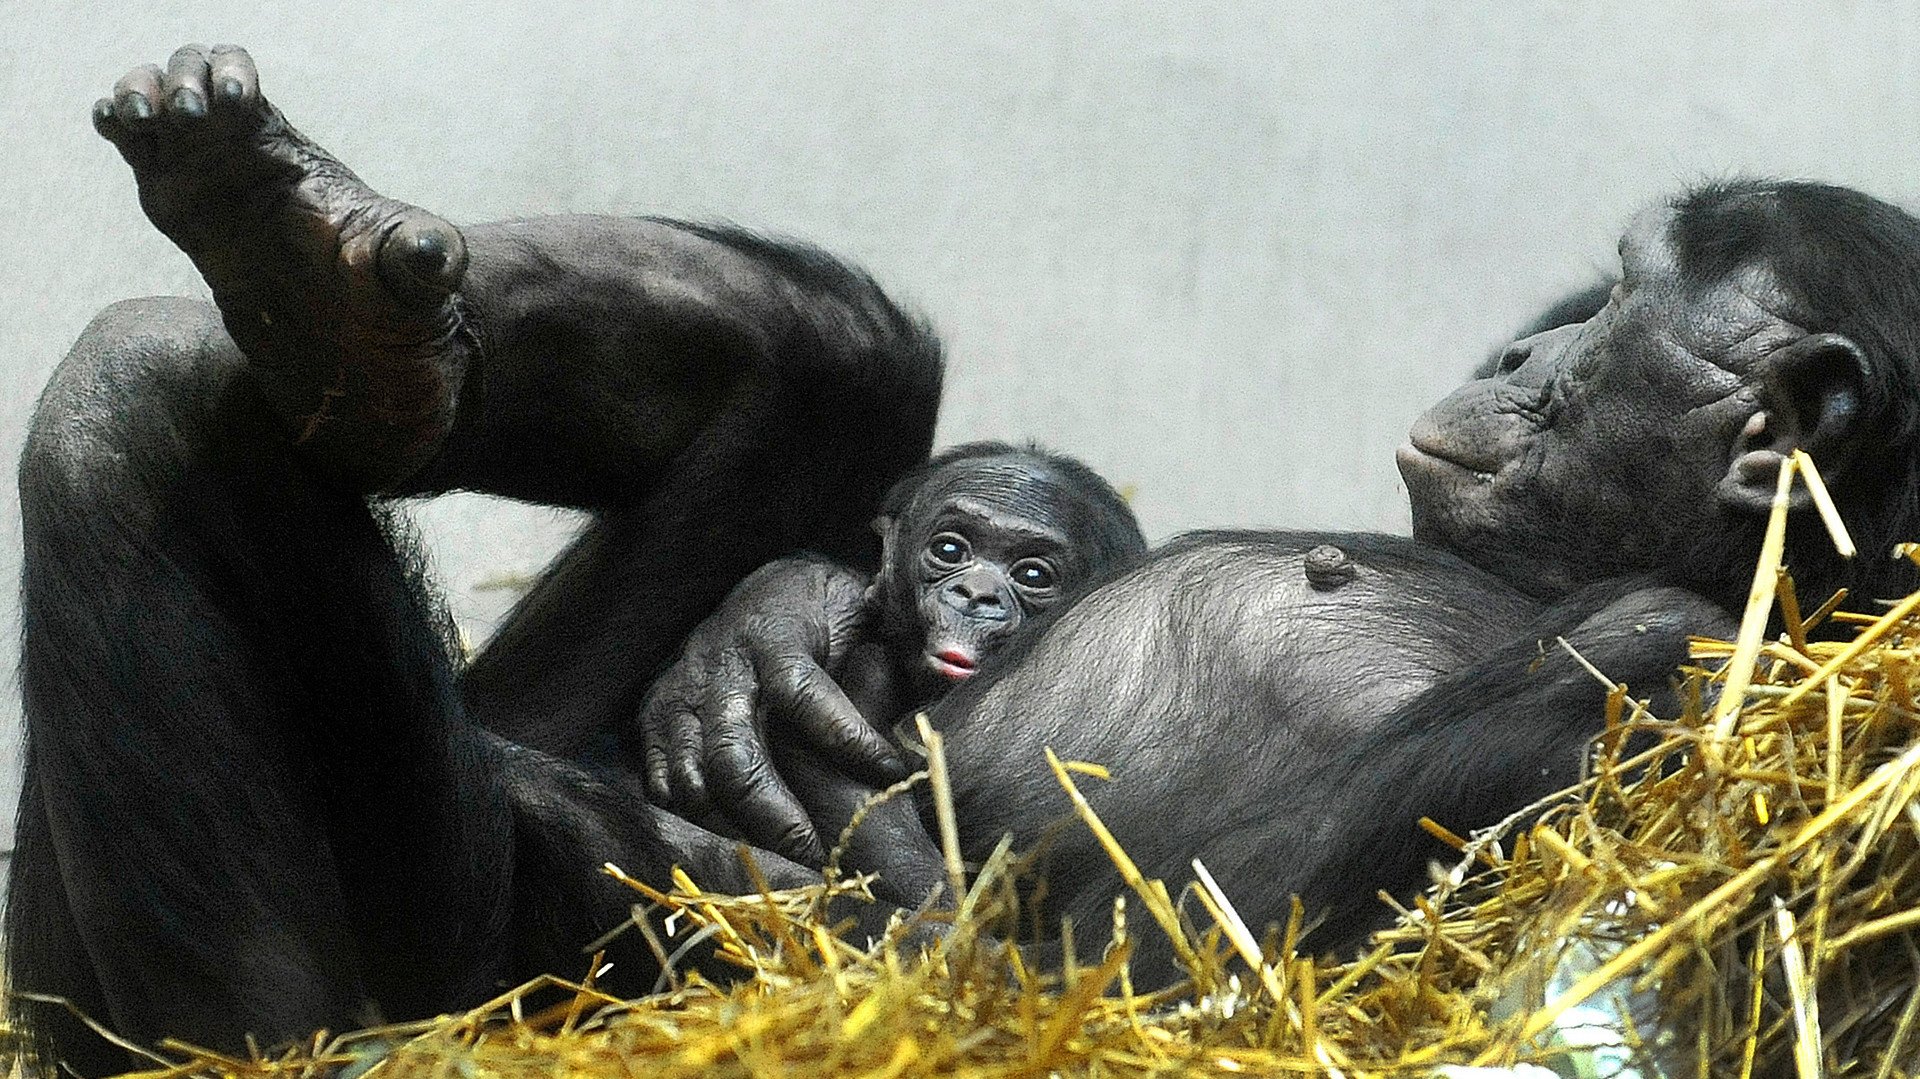 وليد صغير لشمبانزي البونوبو في حضن أمه بحديقة الحيوان غرب ألمانيا، 6 فبراير/شباط 2014